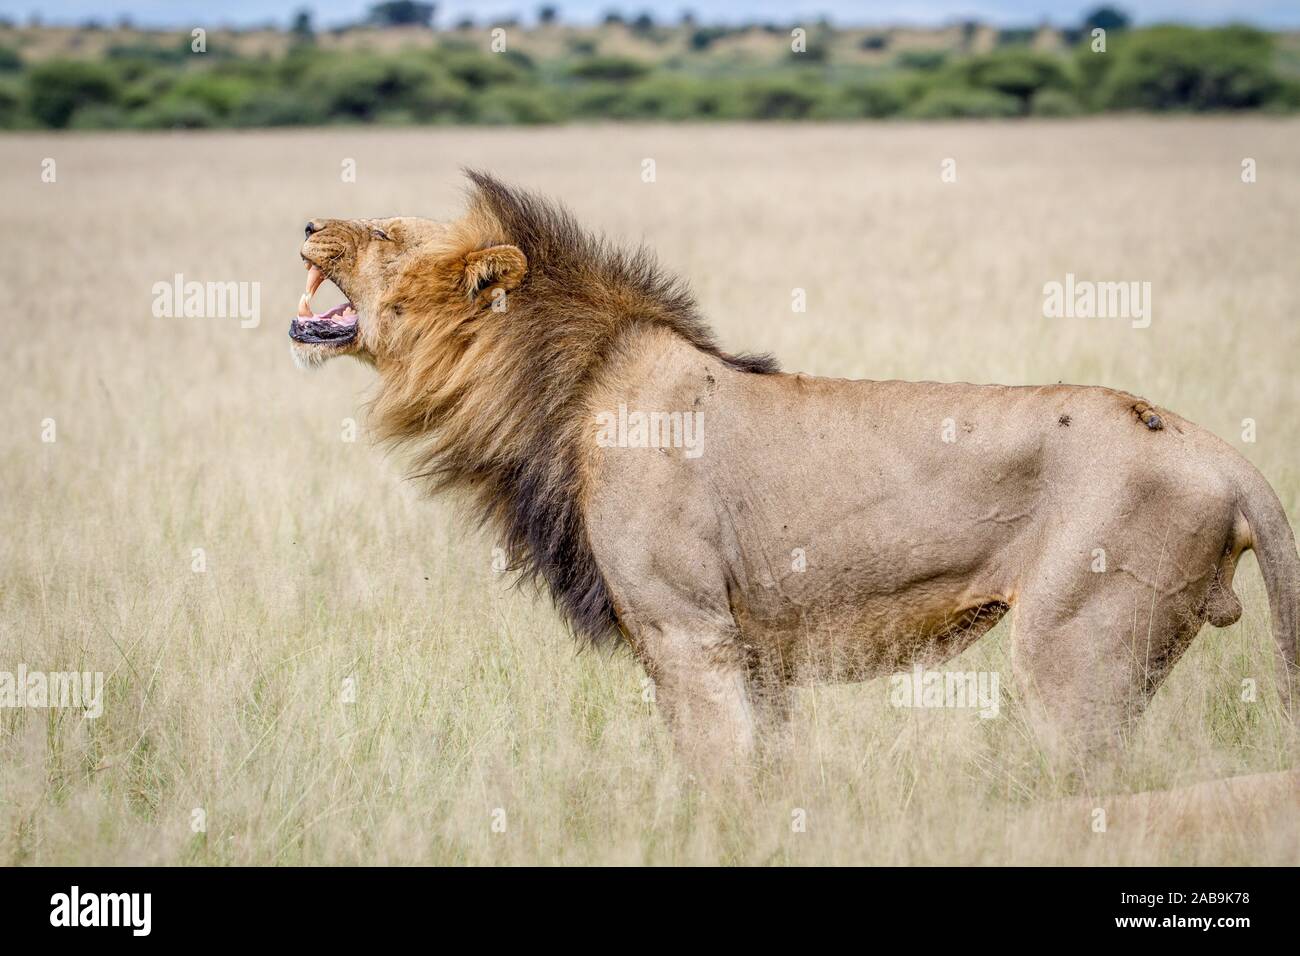 Grand mâle Lion faisant une grimace Flehmen dans le central kalahari, Botswana. Banque D'Images